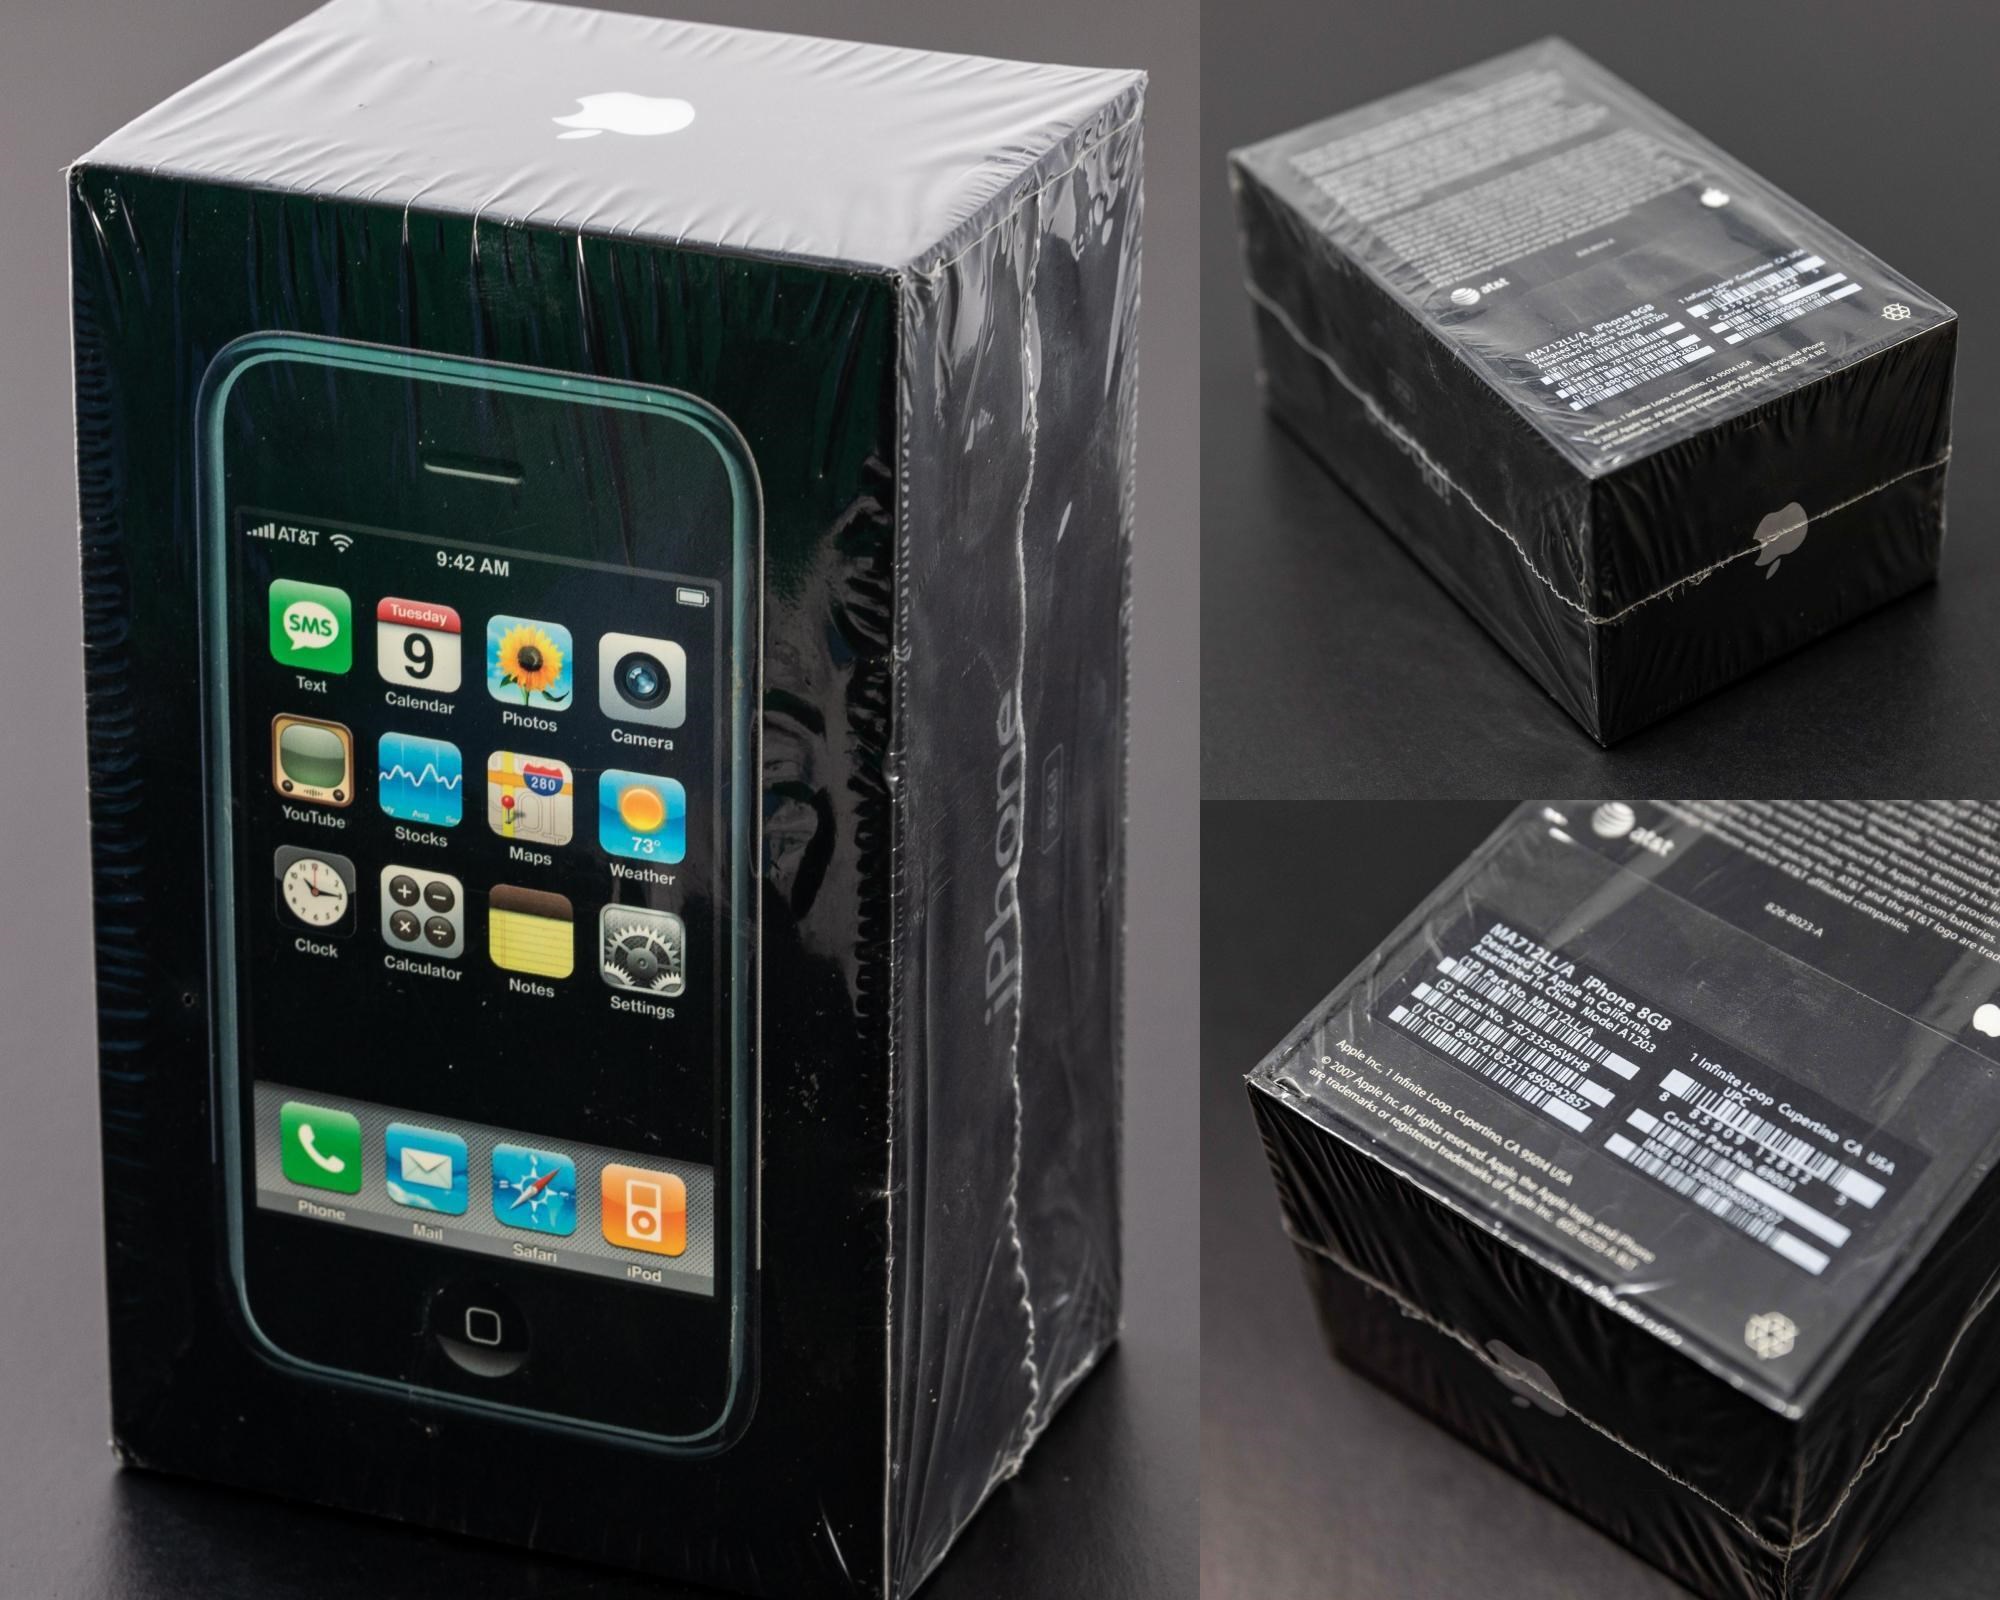 Kutusu açılmamış birinci nesil iPhone, 63 bin dolara satıldı